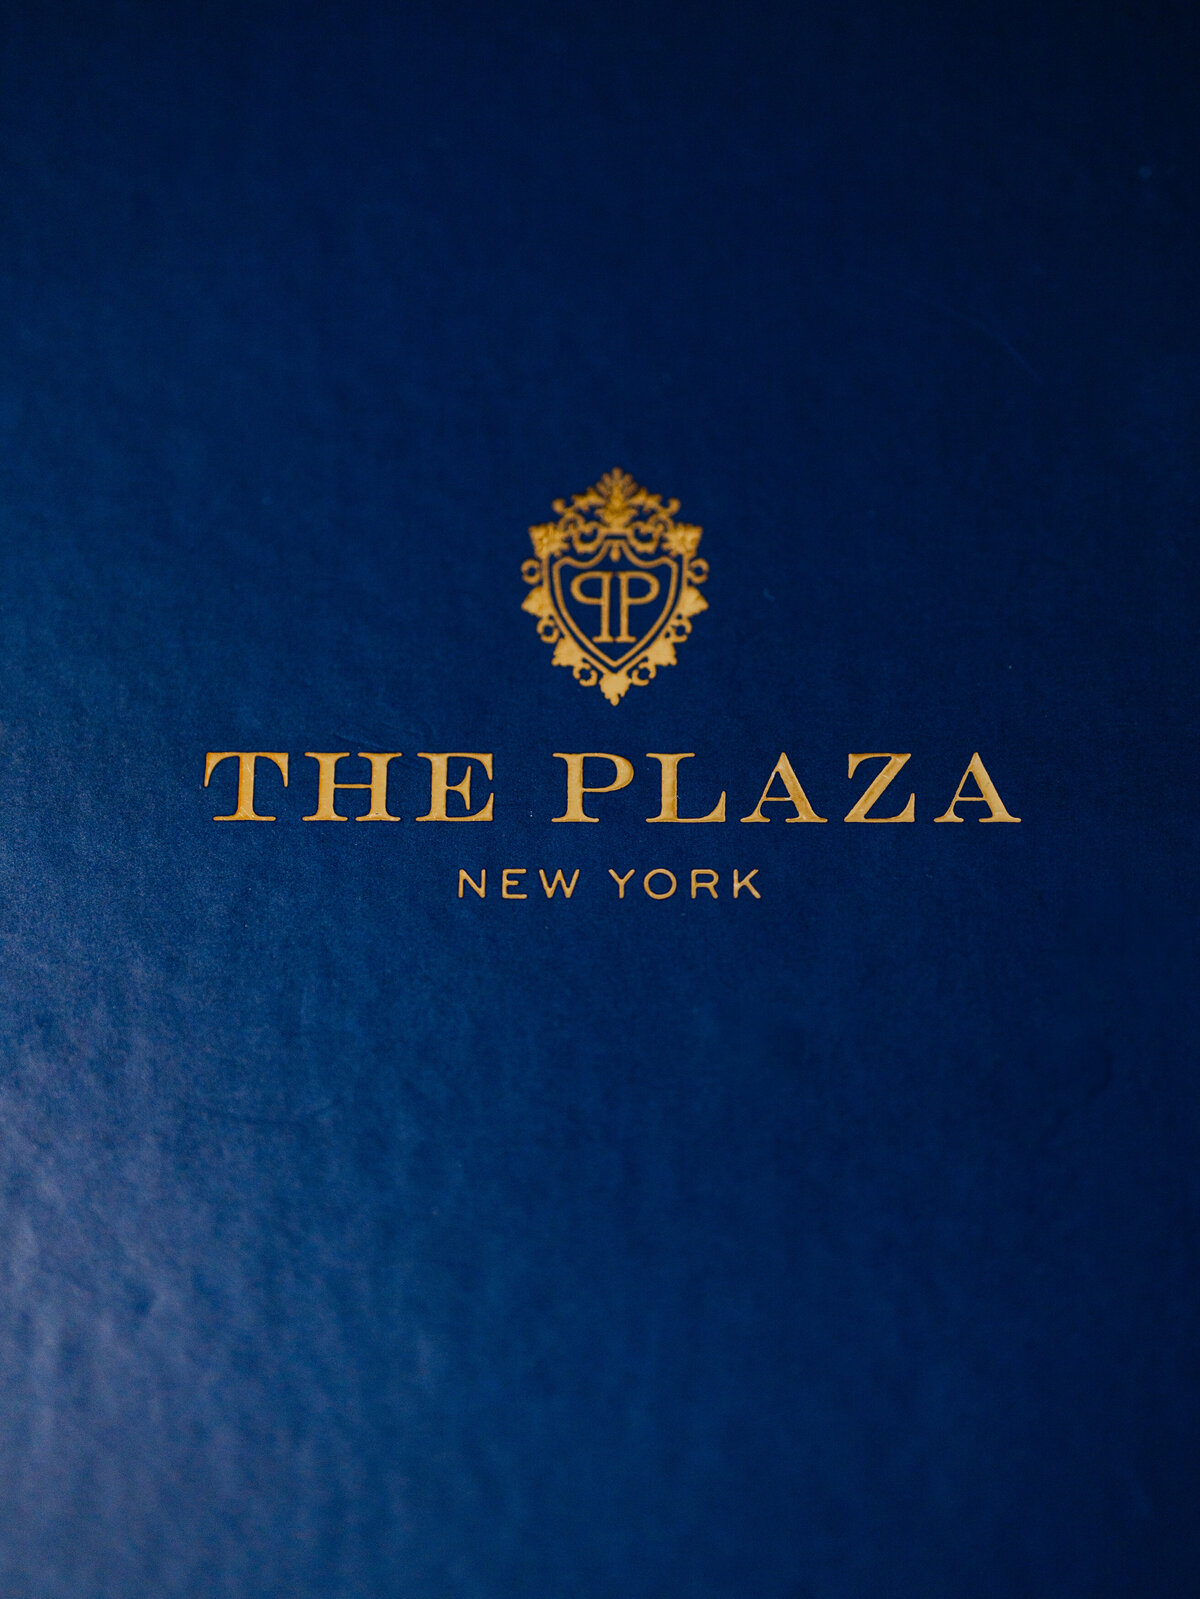 theplazahotel-plazawedding-fancywedding-newyorkwedding-felixfeyginphotography-002